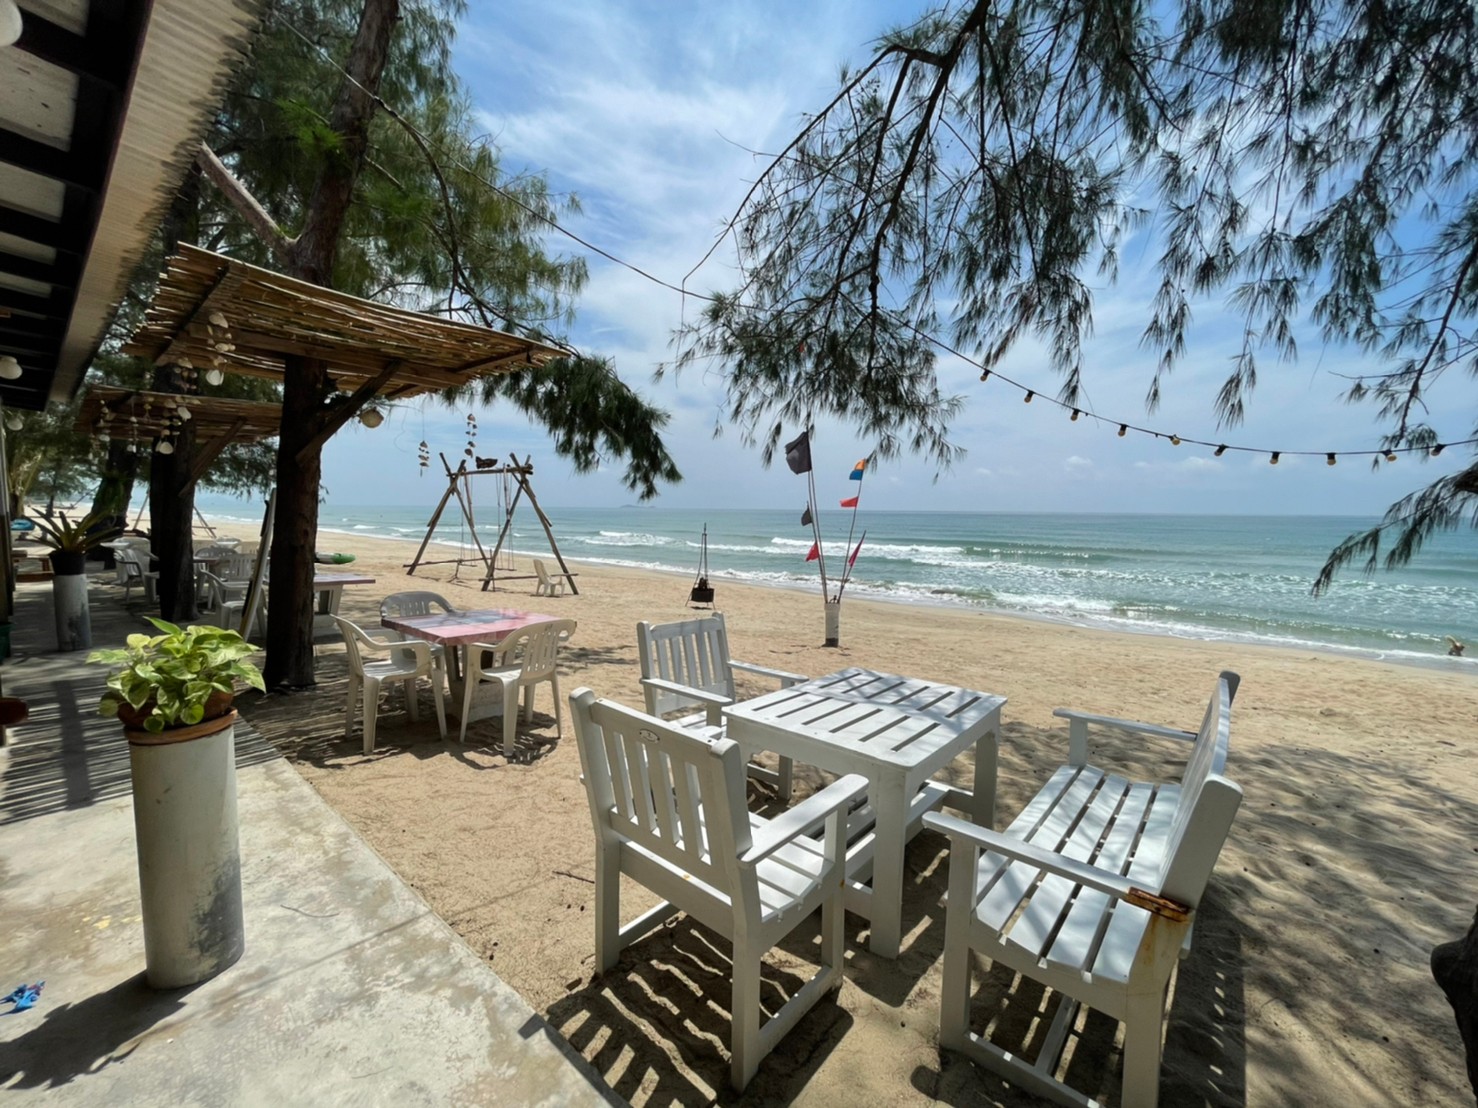 Fotografija Saeng Arun Beach priljubljeno mesto med poznavalci sprostitve